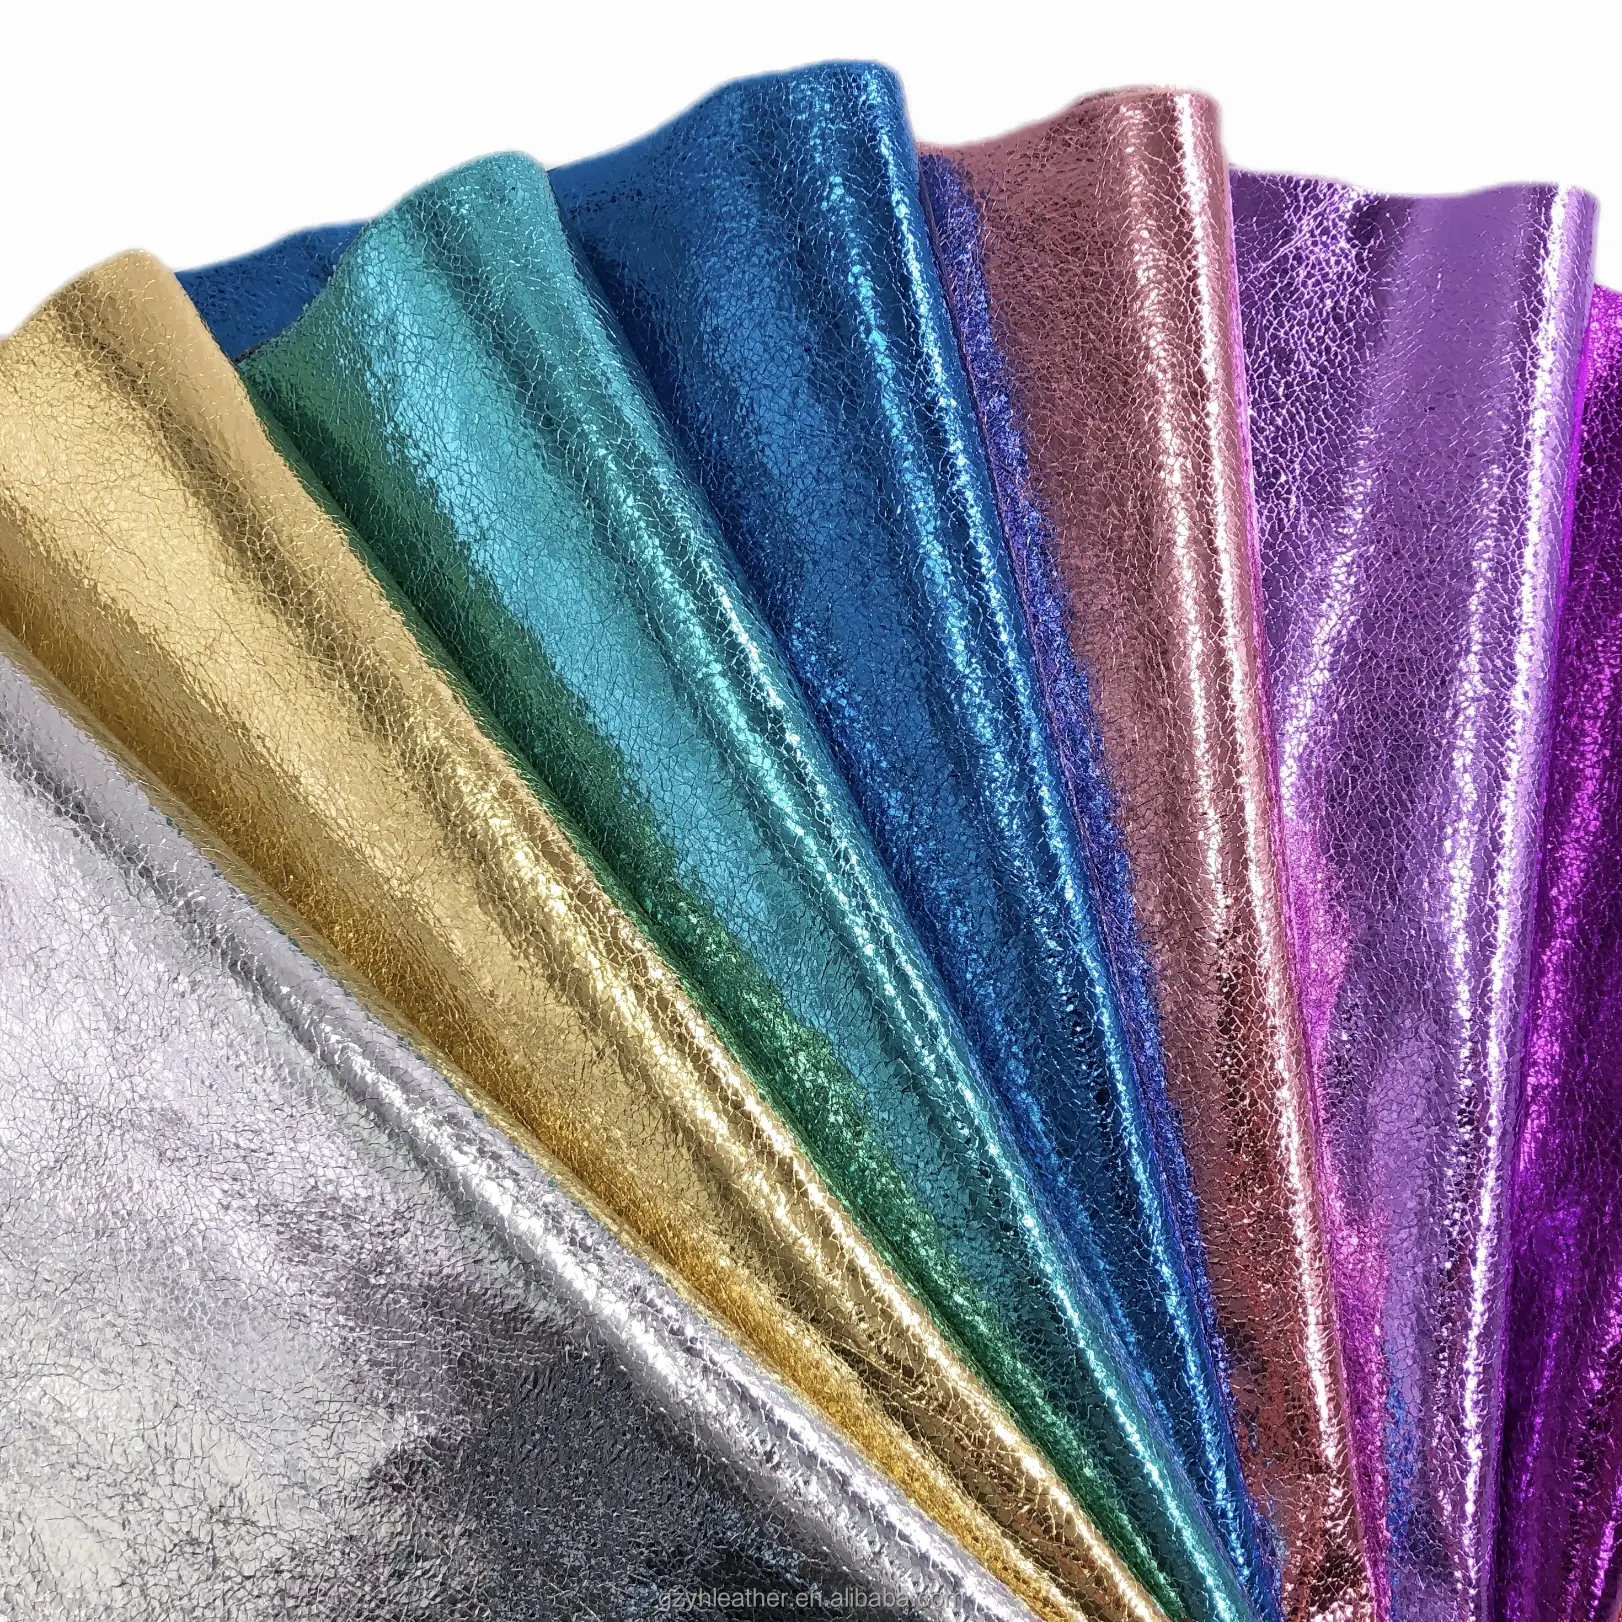 Marimekko FA094 küçük çatlak vegan tekstil deri ürünler sentetik kumaş pu metalik deri çanta ayakkabı süslemeleri